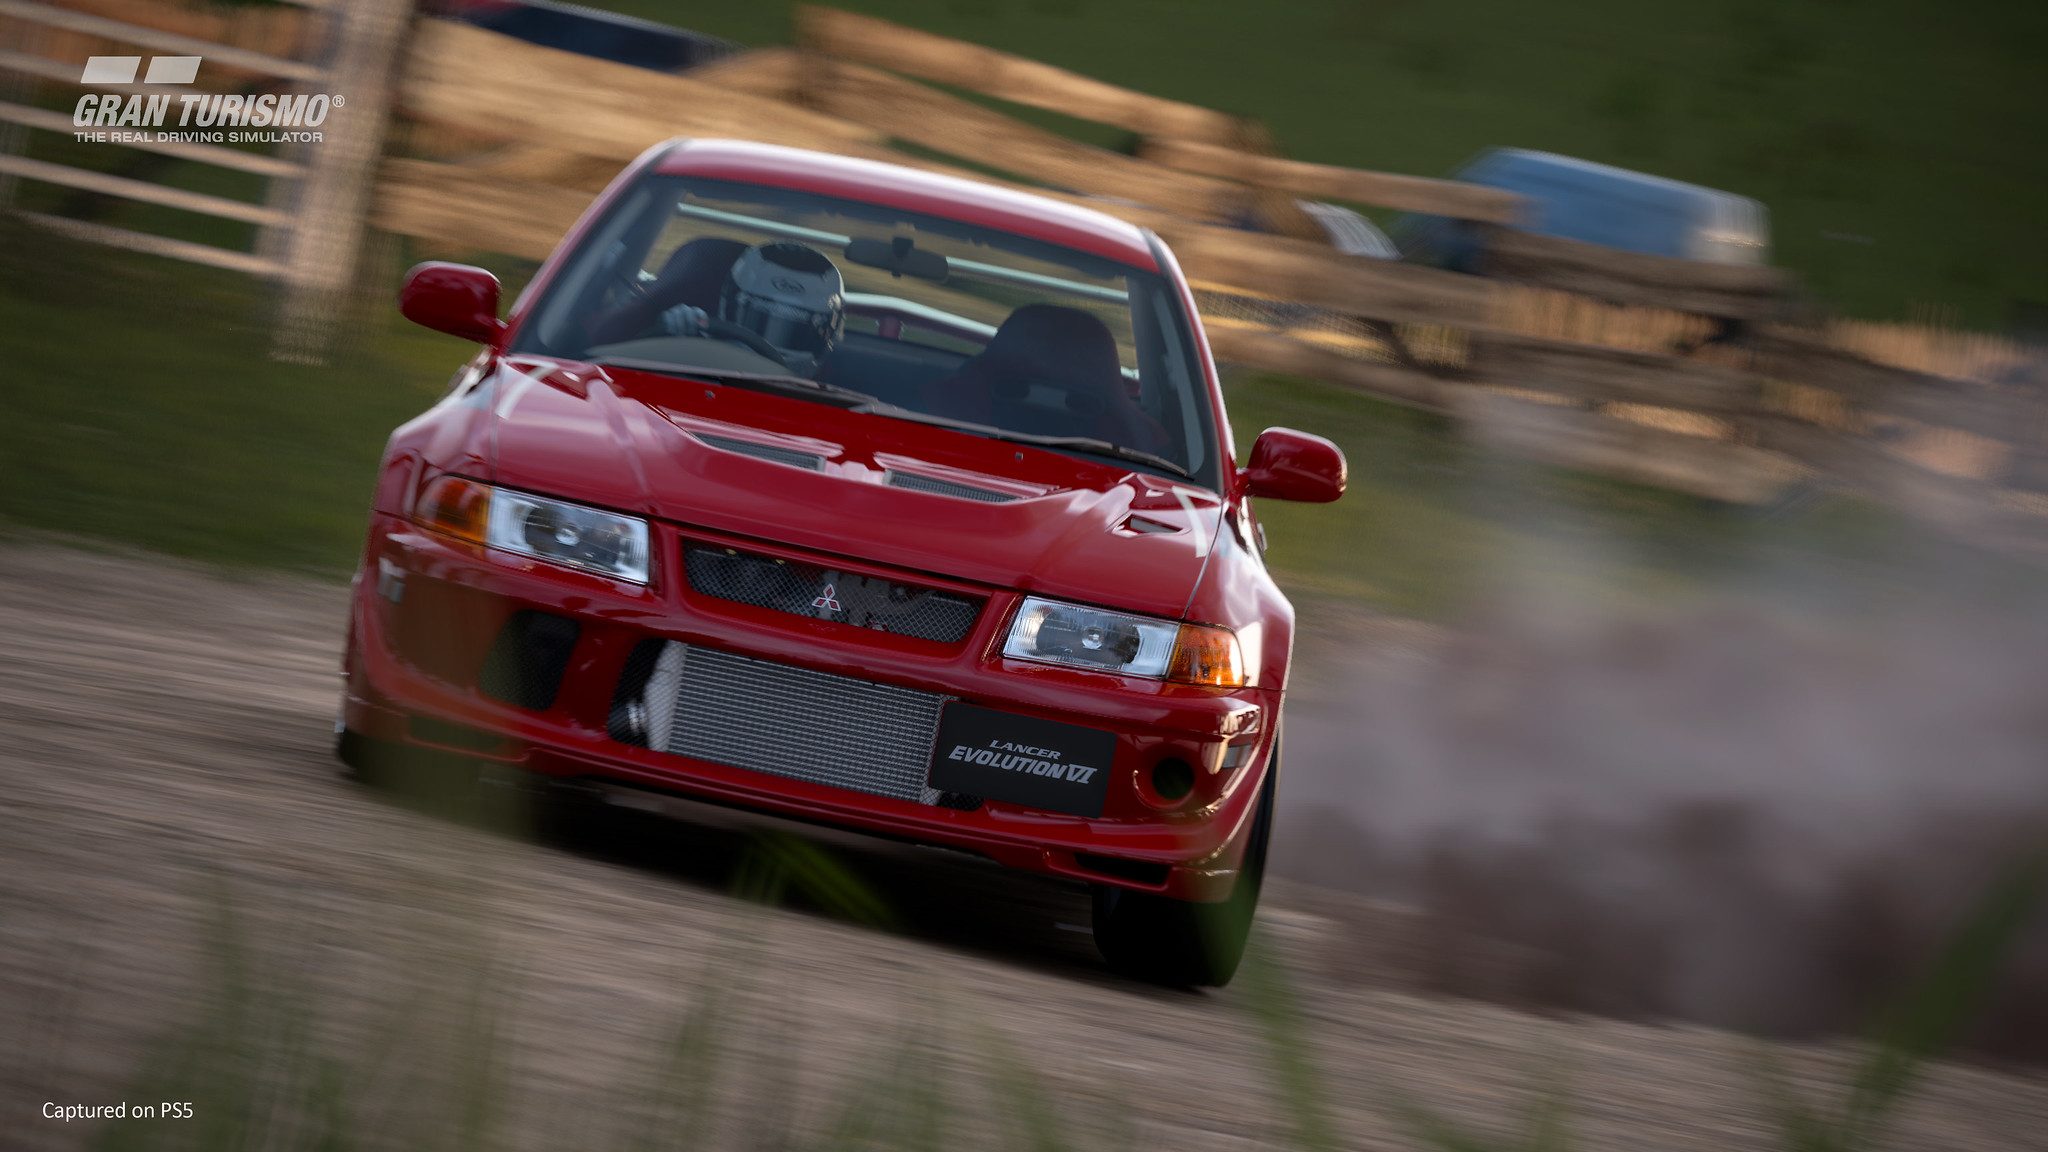 Gran Turismo 7: veja o que esperar do jogo de corrida para PS4 e PS5